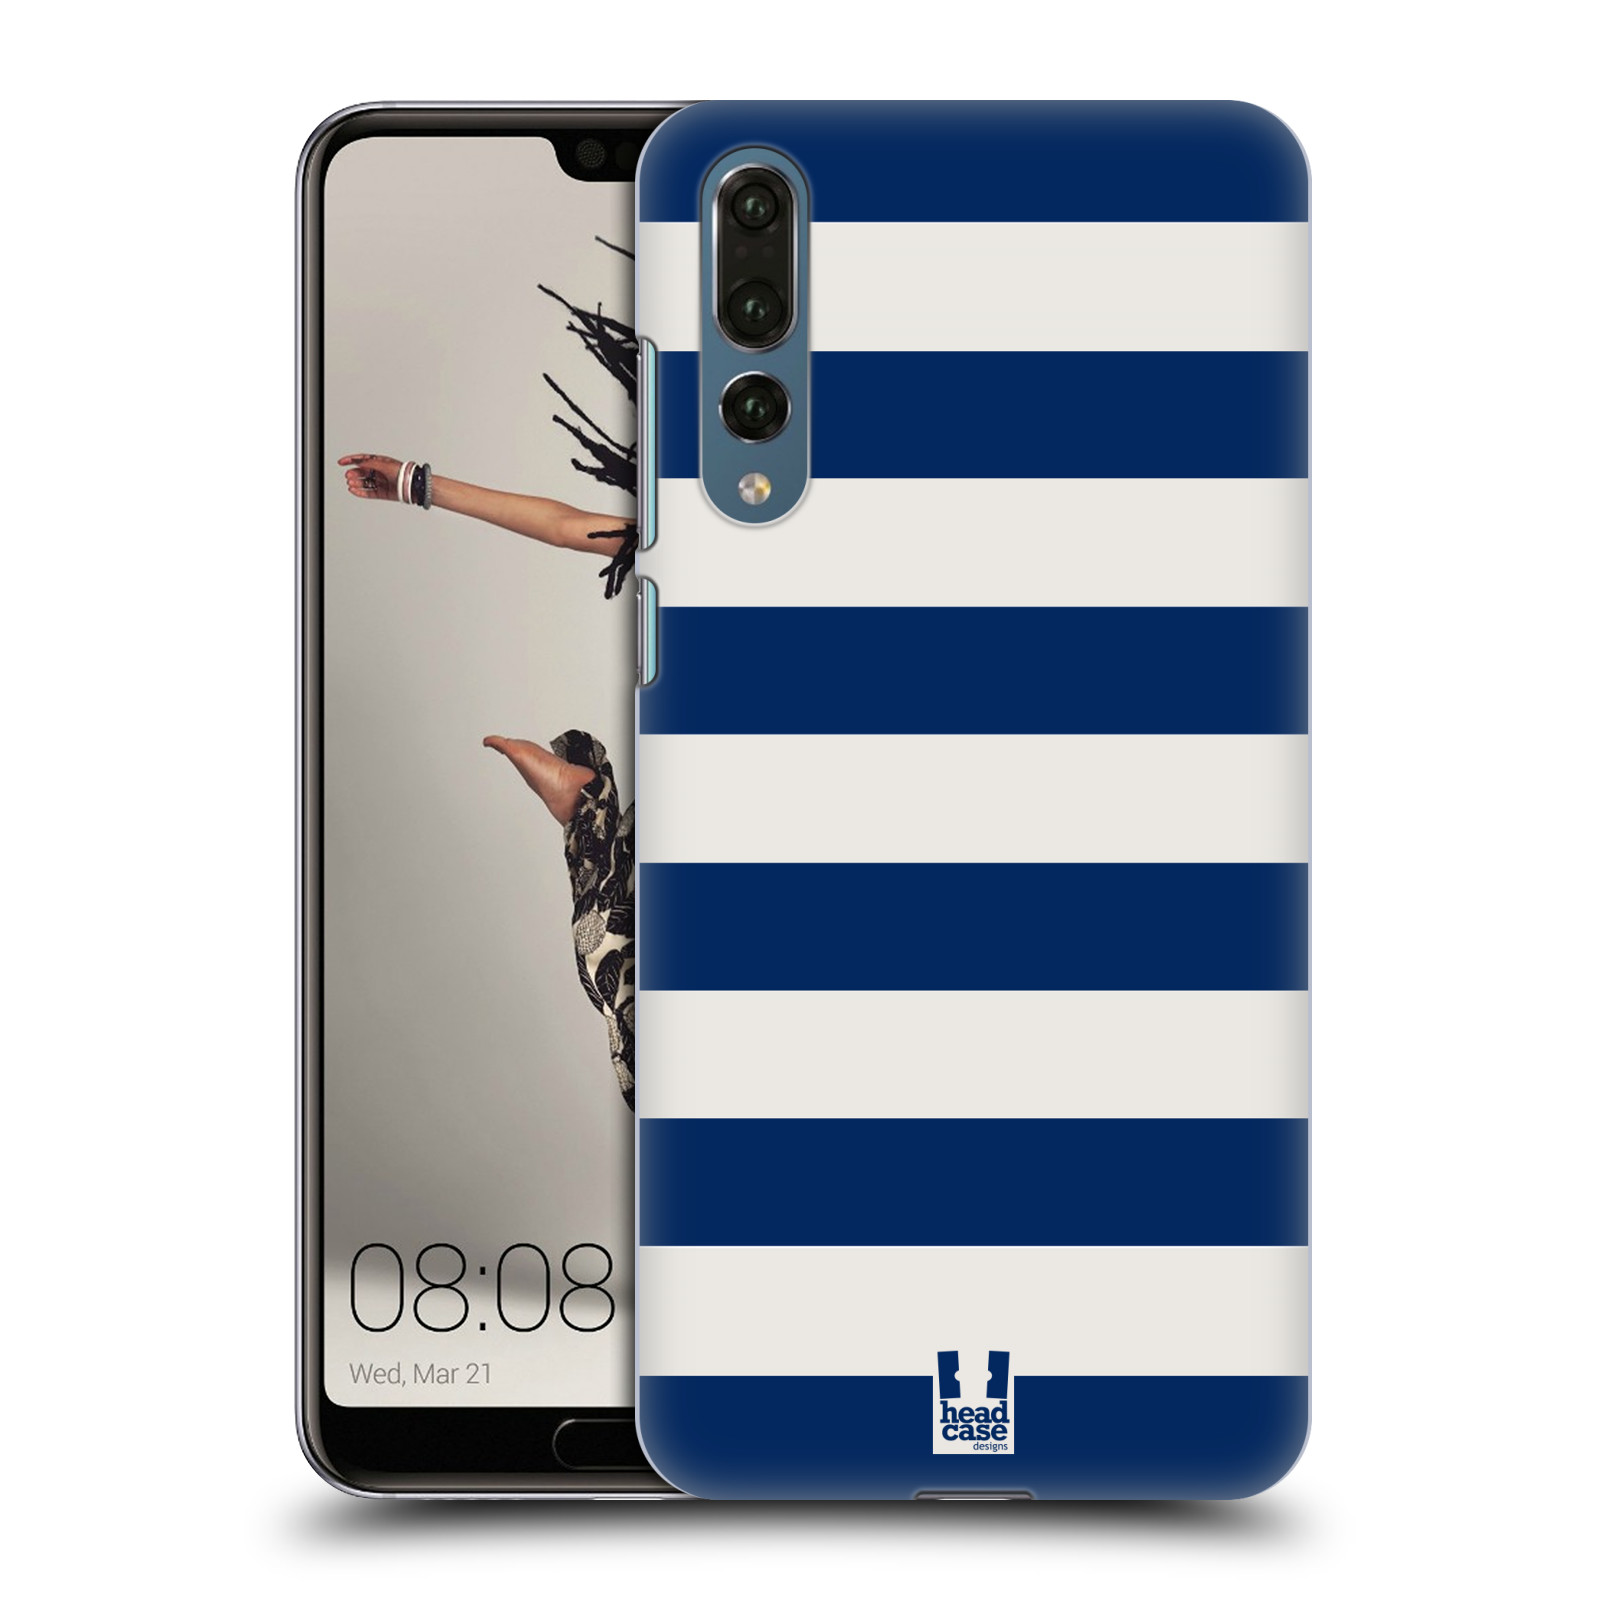 Zadní obal pro mobil Huawei P20 PRO - HEAD CASE - Námořnické pruhy modrá a bílá